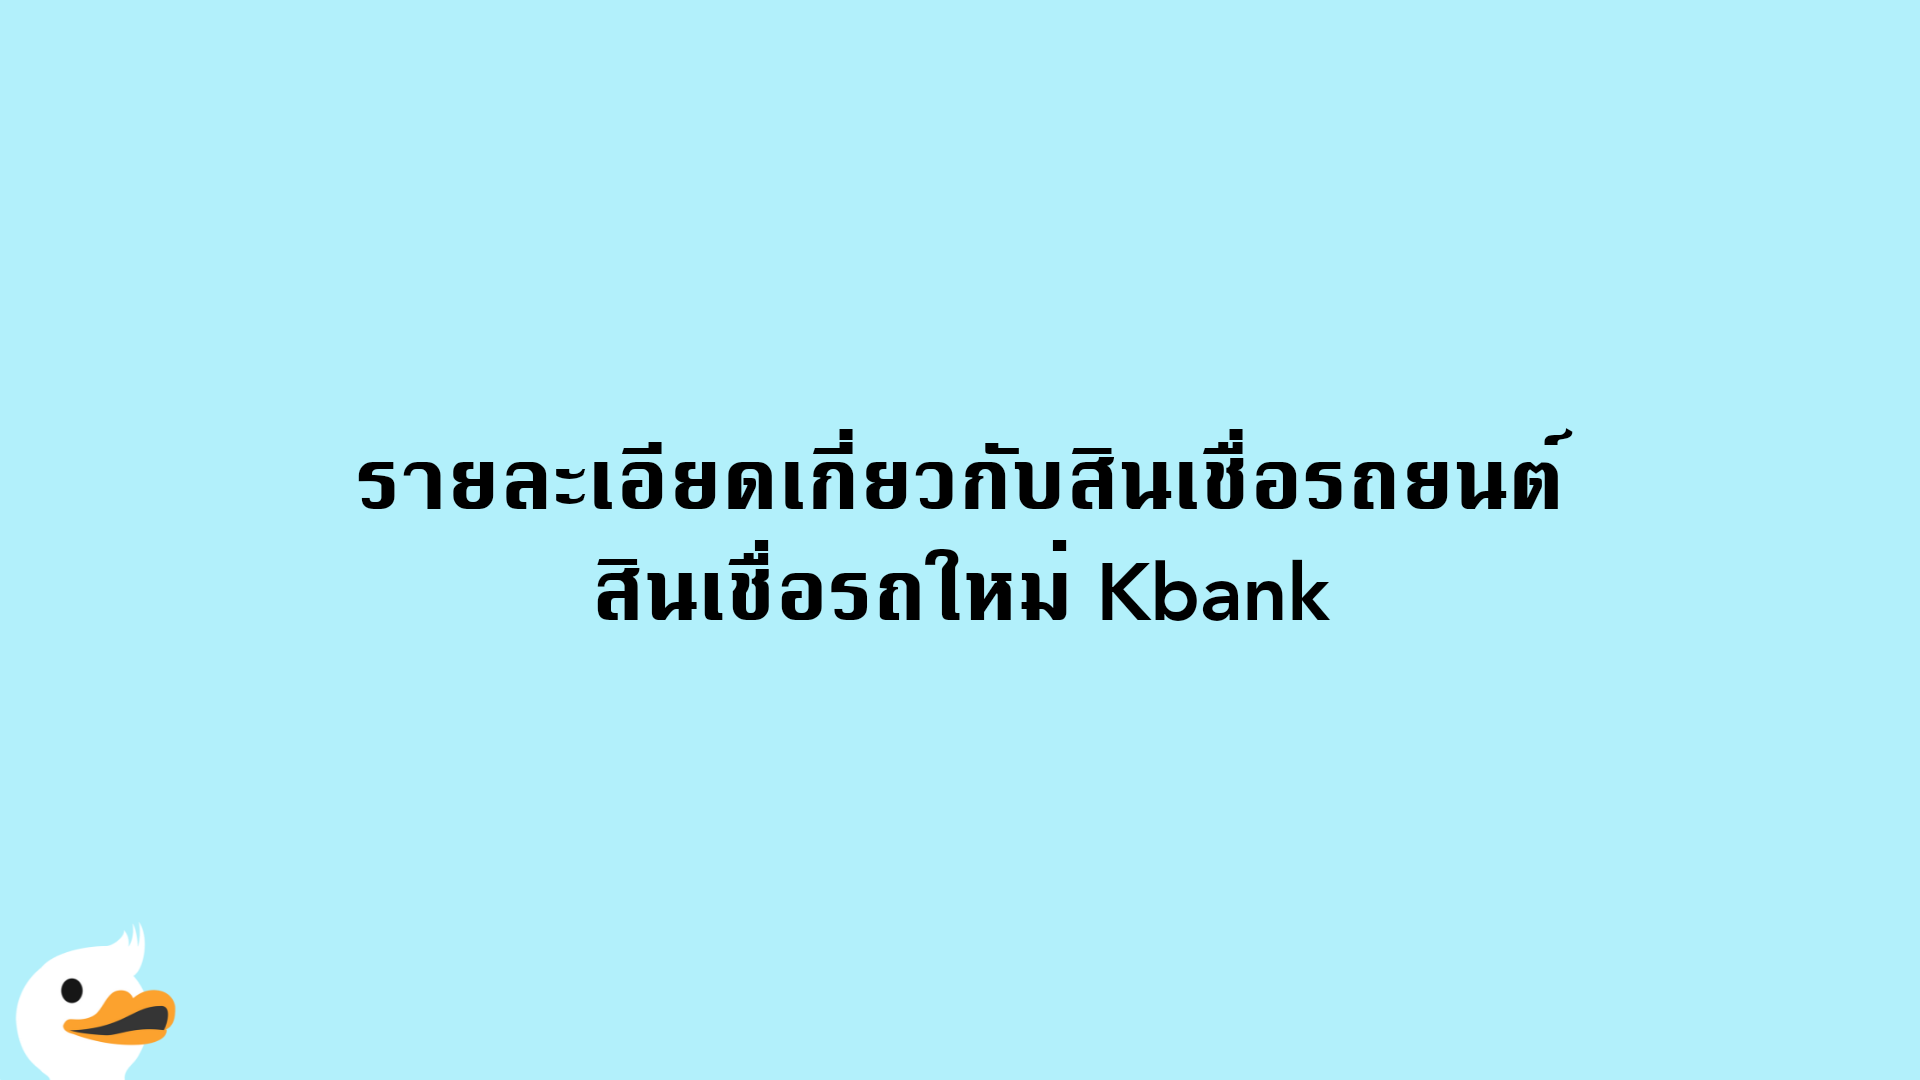 รายละเอียดเกี่ยวกับสินเชื่อรถยนต์ สินเชื่อรถใหม่ Kbank